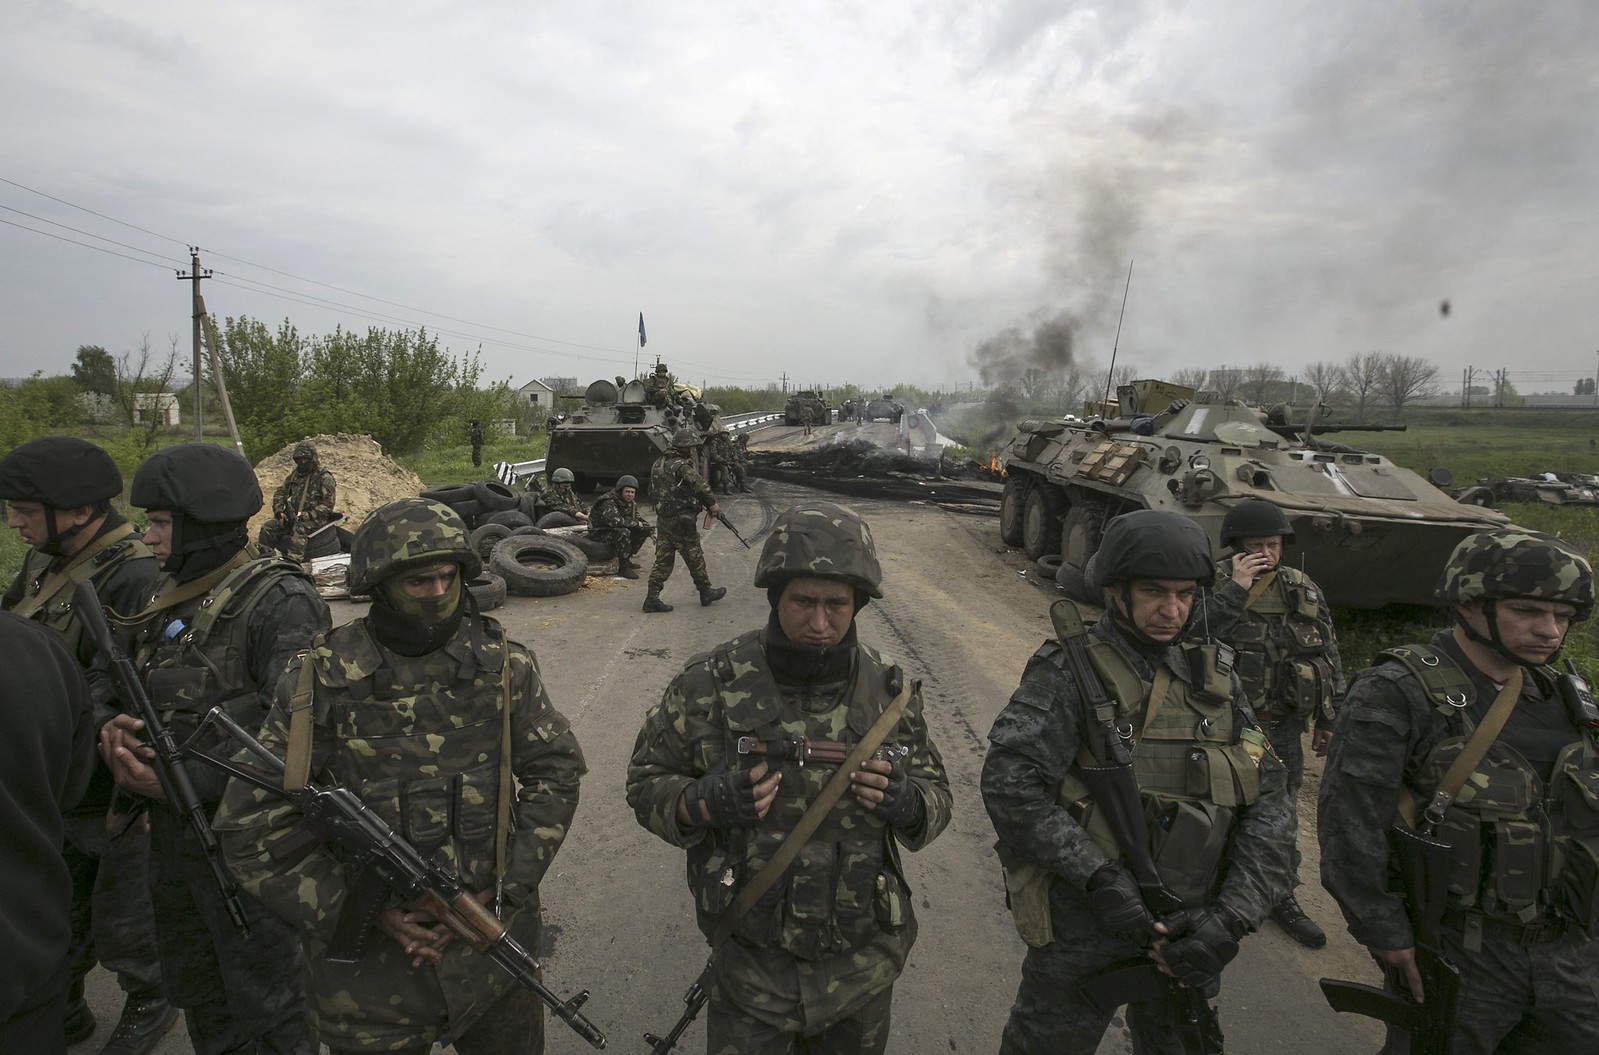 Ucrania destituye al presidente Yanukovich. Rusia anexa la Peninsula de Crimea, separatistas armados atacan en el Este. - Página 25 14064313766_83f234bb0c_h